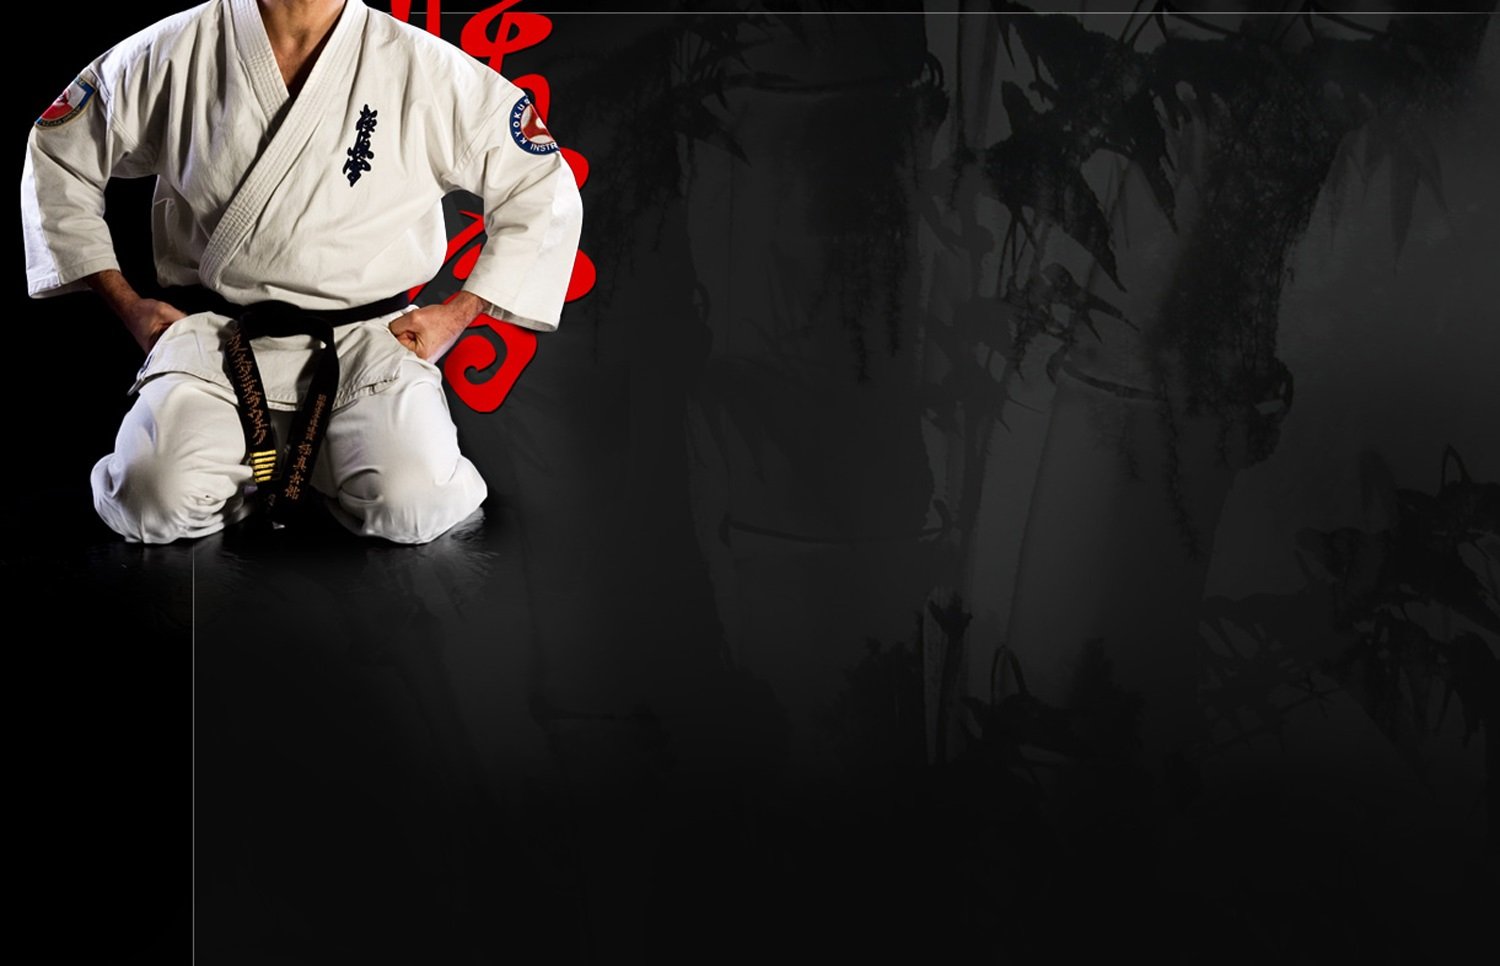 Kyokoshin karate wallpaper 1500x966 282652 WallpaperUP